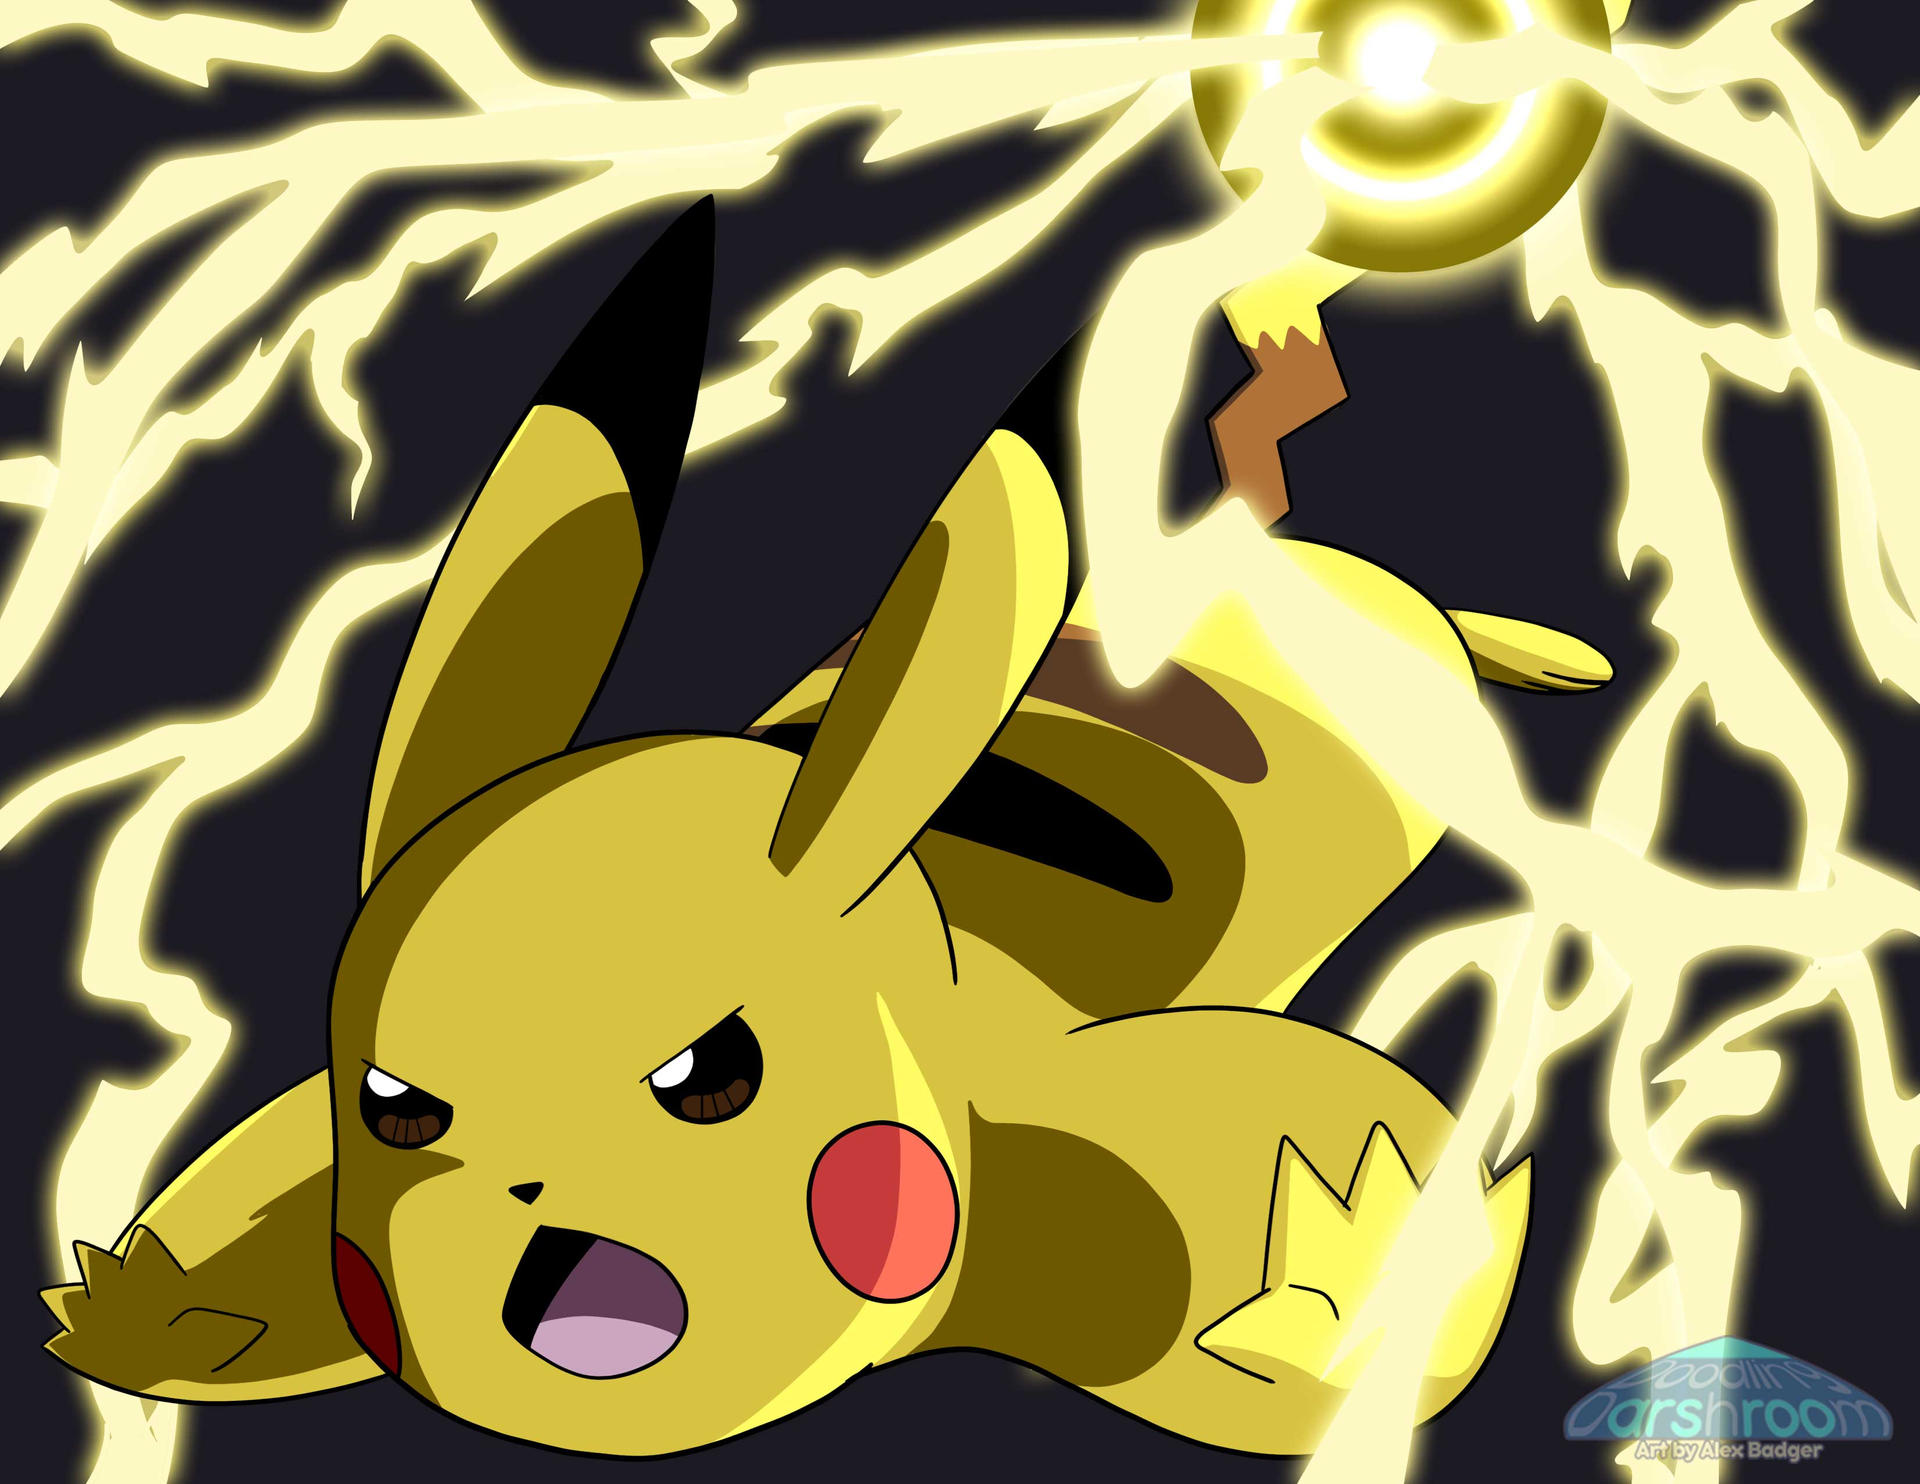 Poster Pokemon Pikachu Charged Up